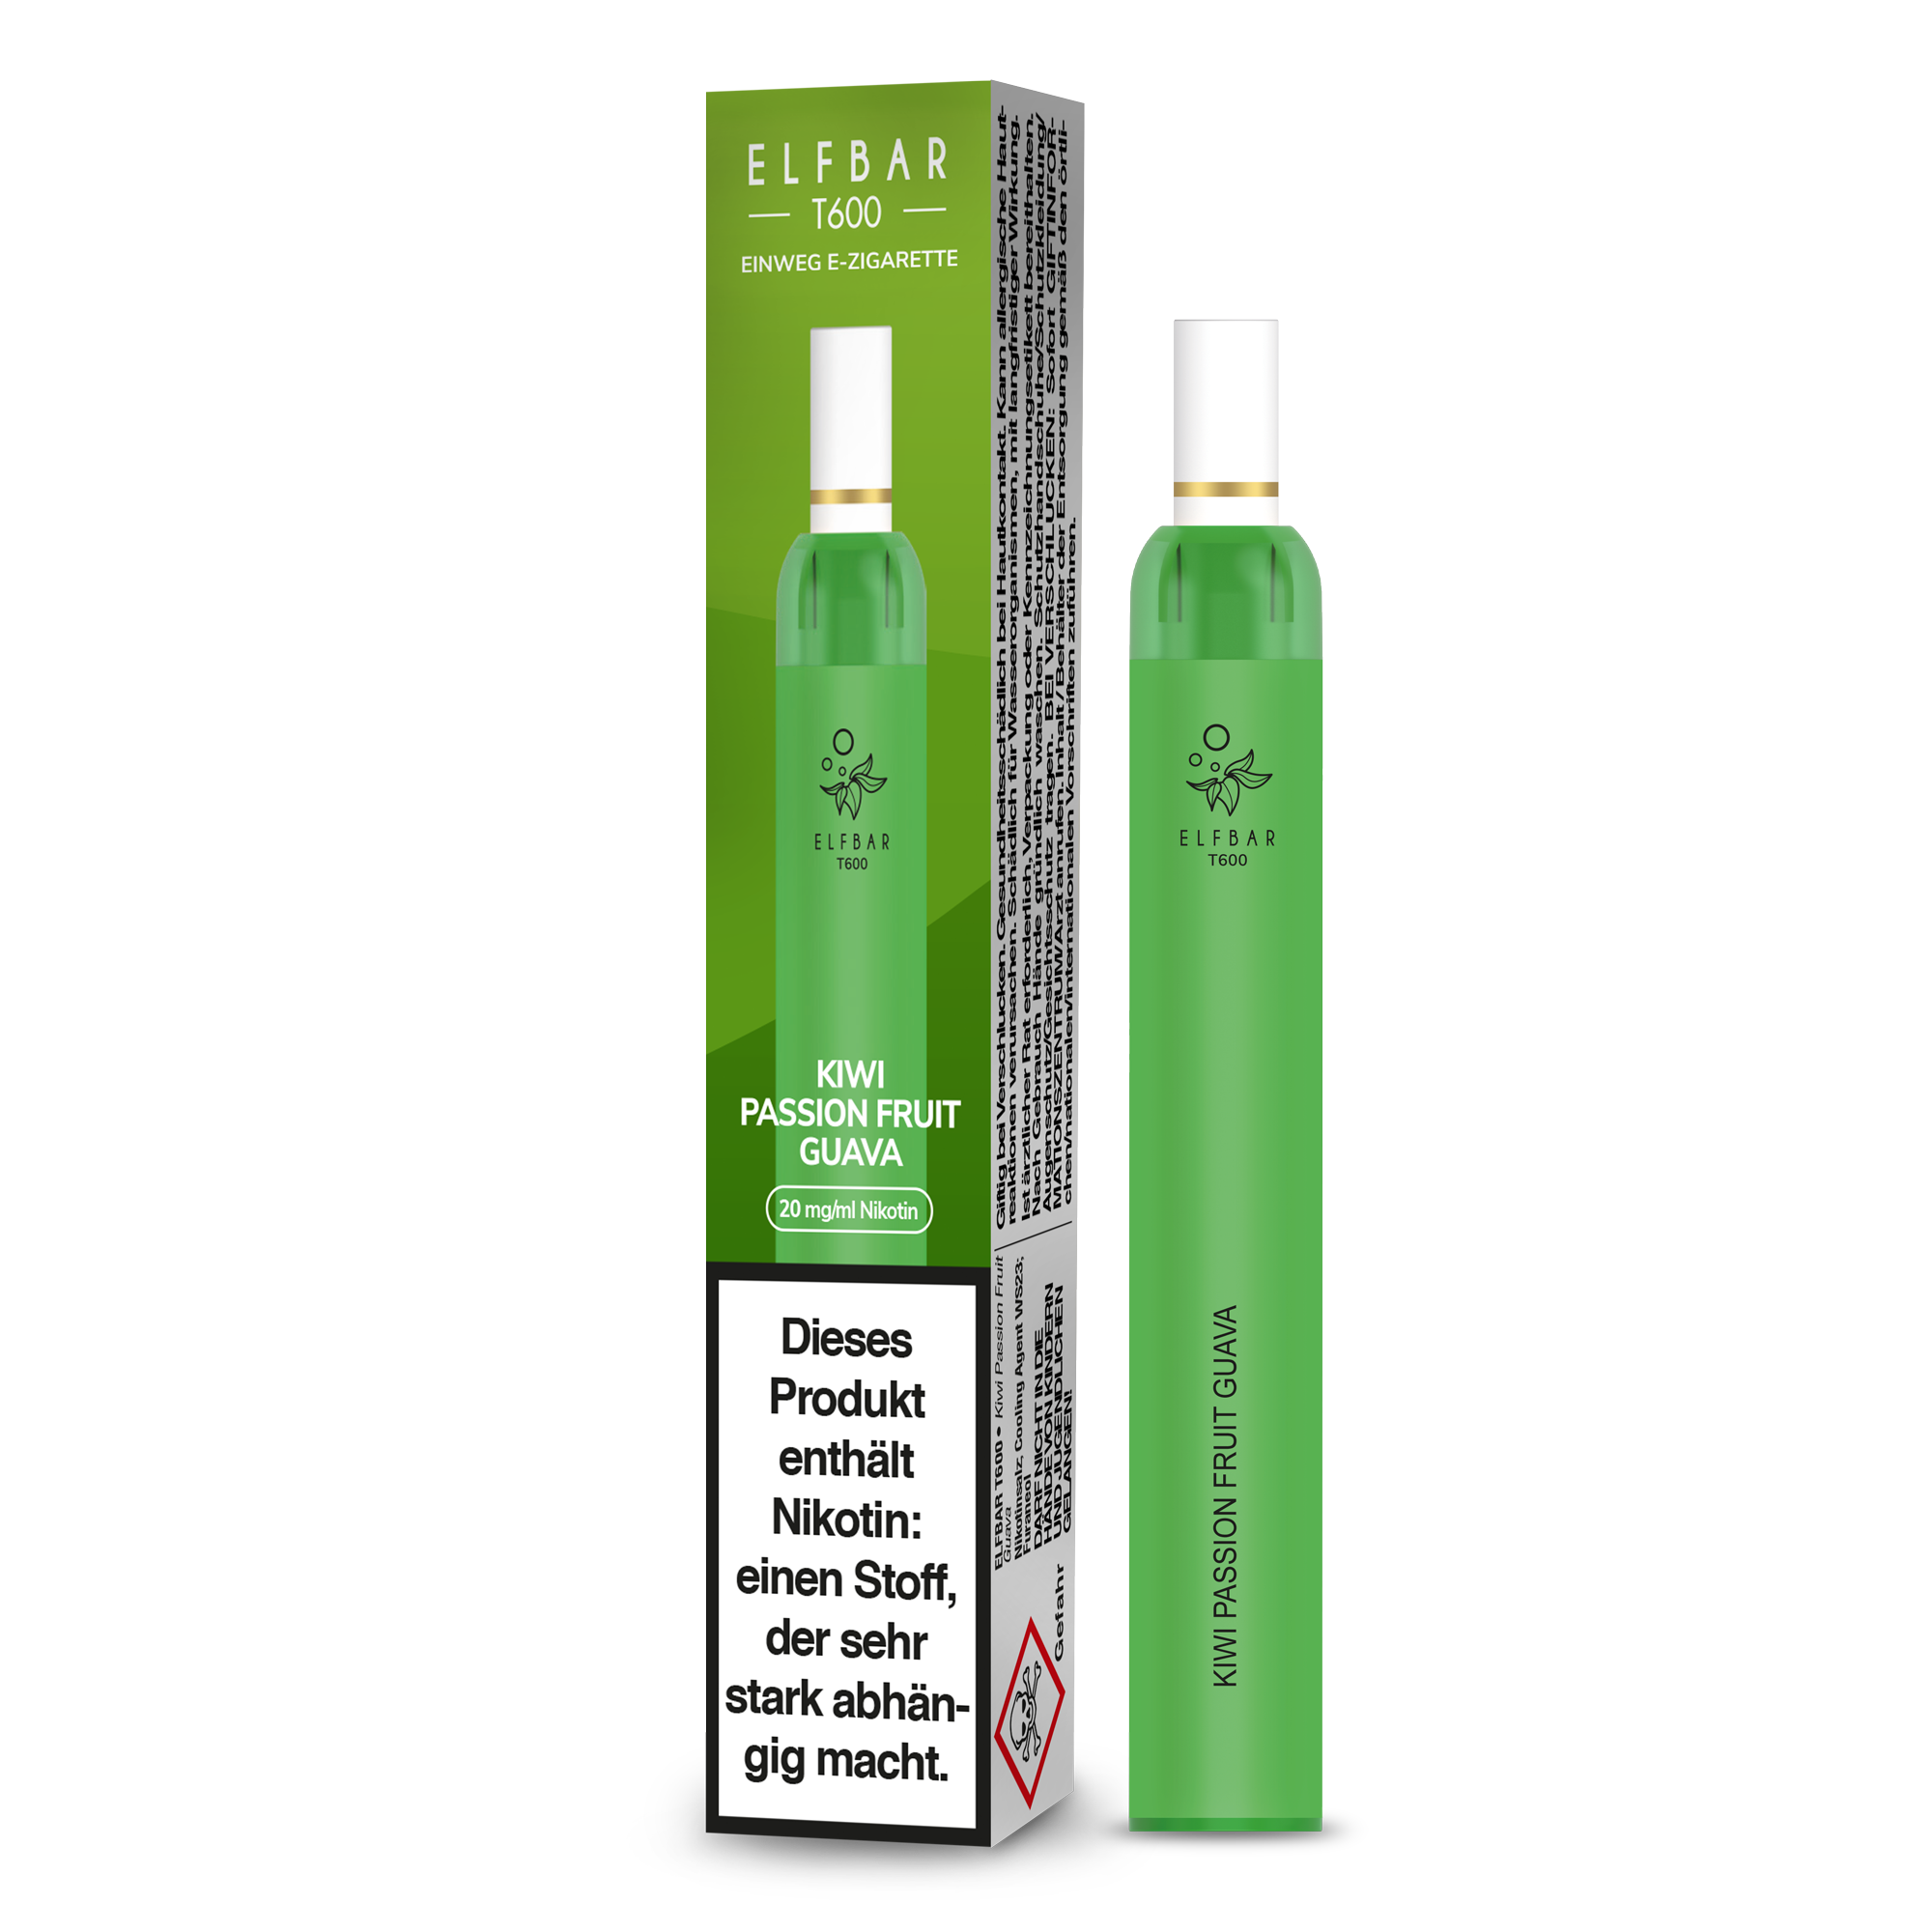 Elf Bar T600 Einweg E-Zigarette - Kiwi Passion Fruit Guava 20 mg/ml